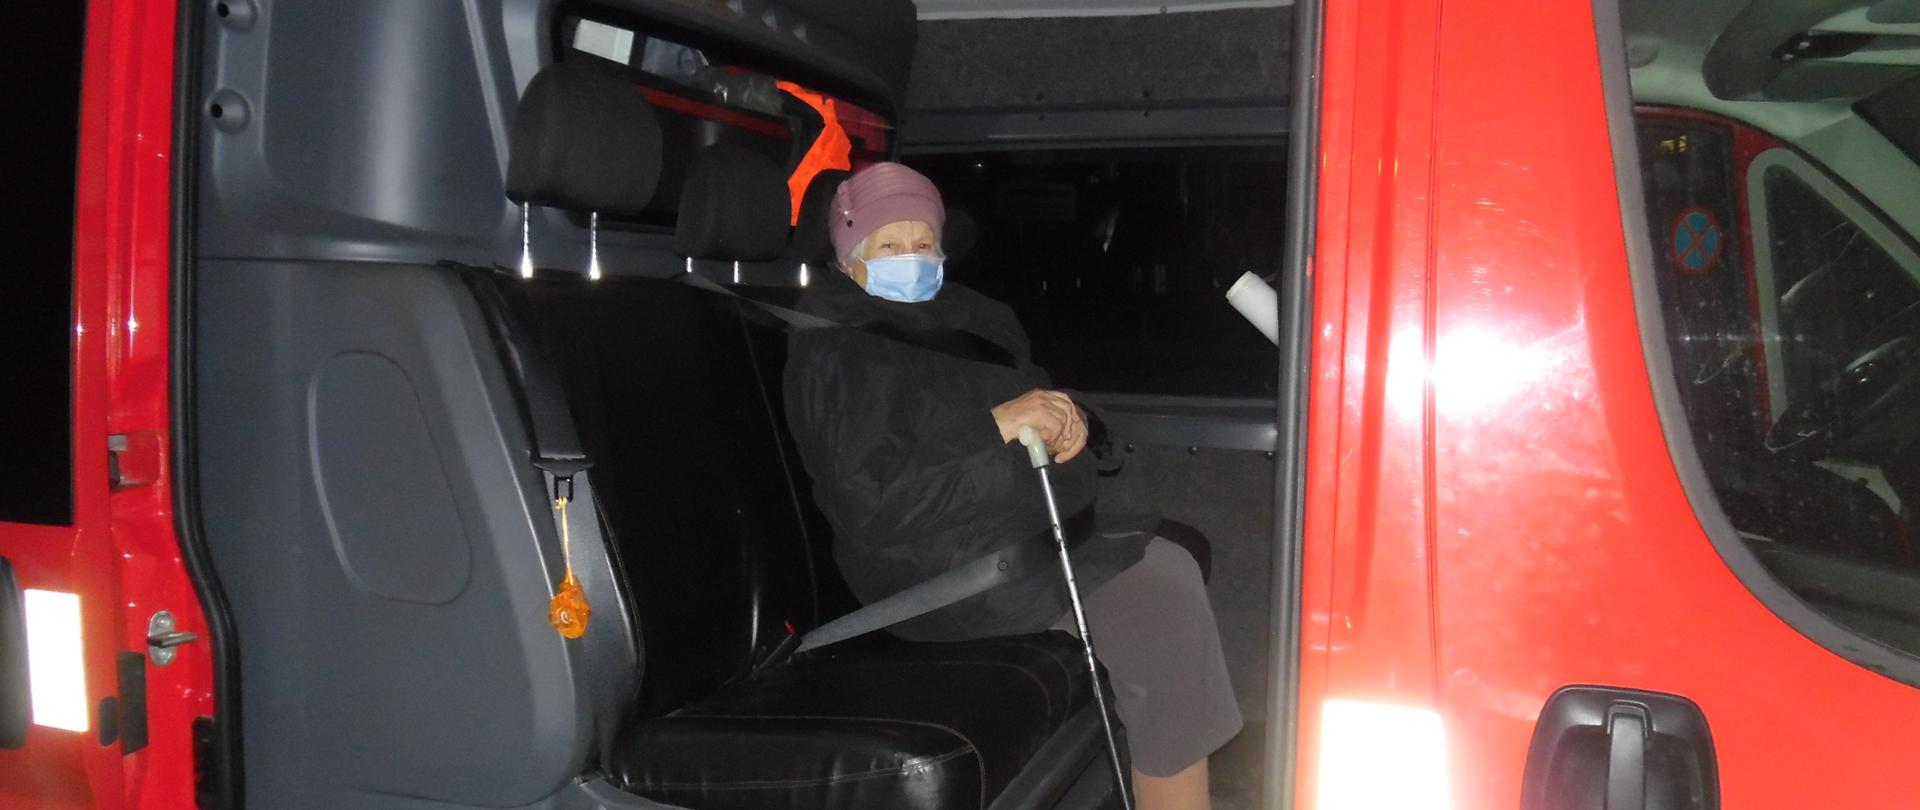 Kobieta w maseczce przeciwko covid-19 z laską siedzi w samochodzie strażackim typu furgon z przedziałem osobowym.